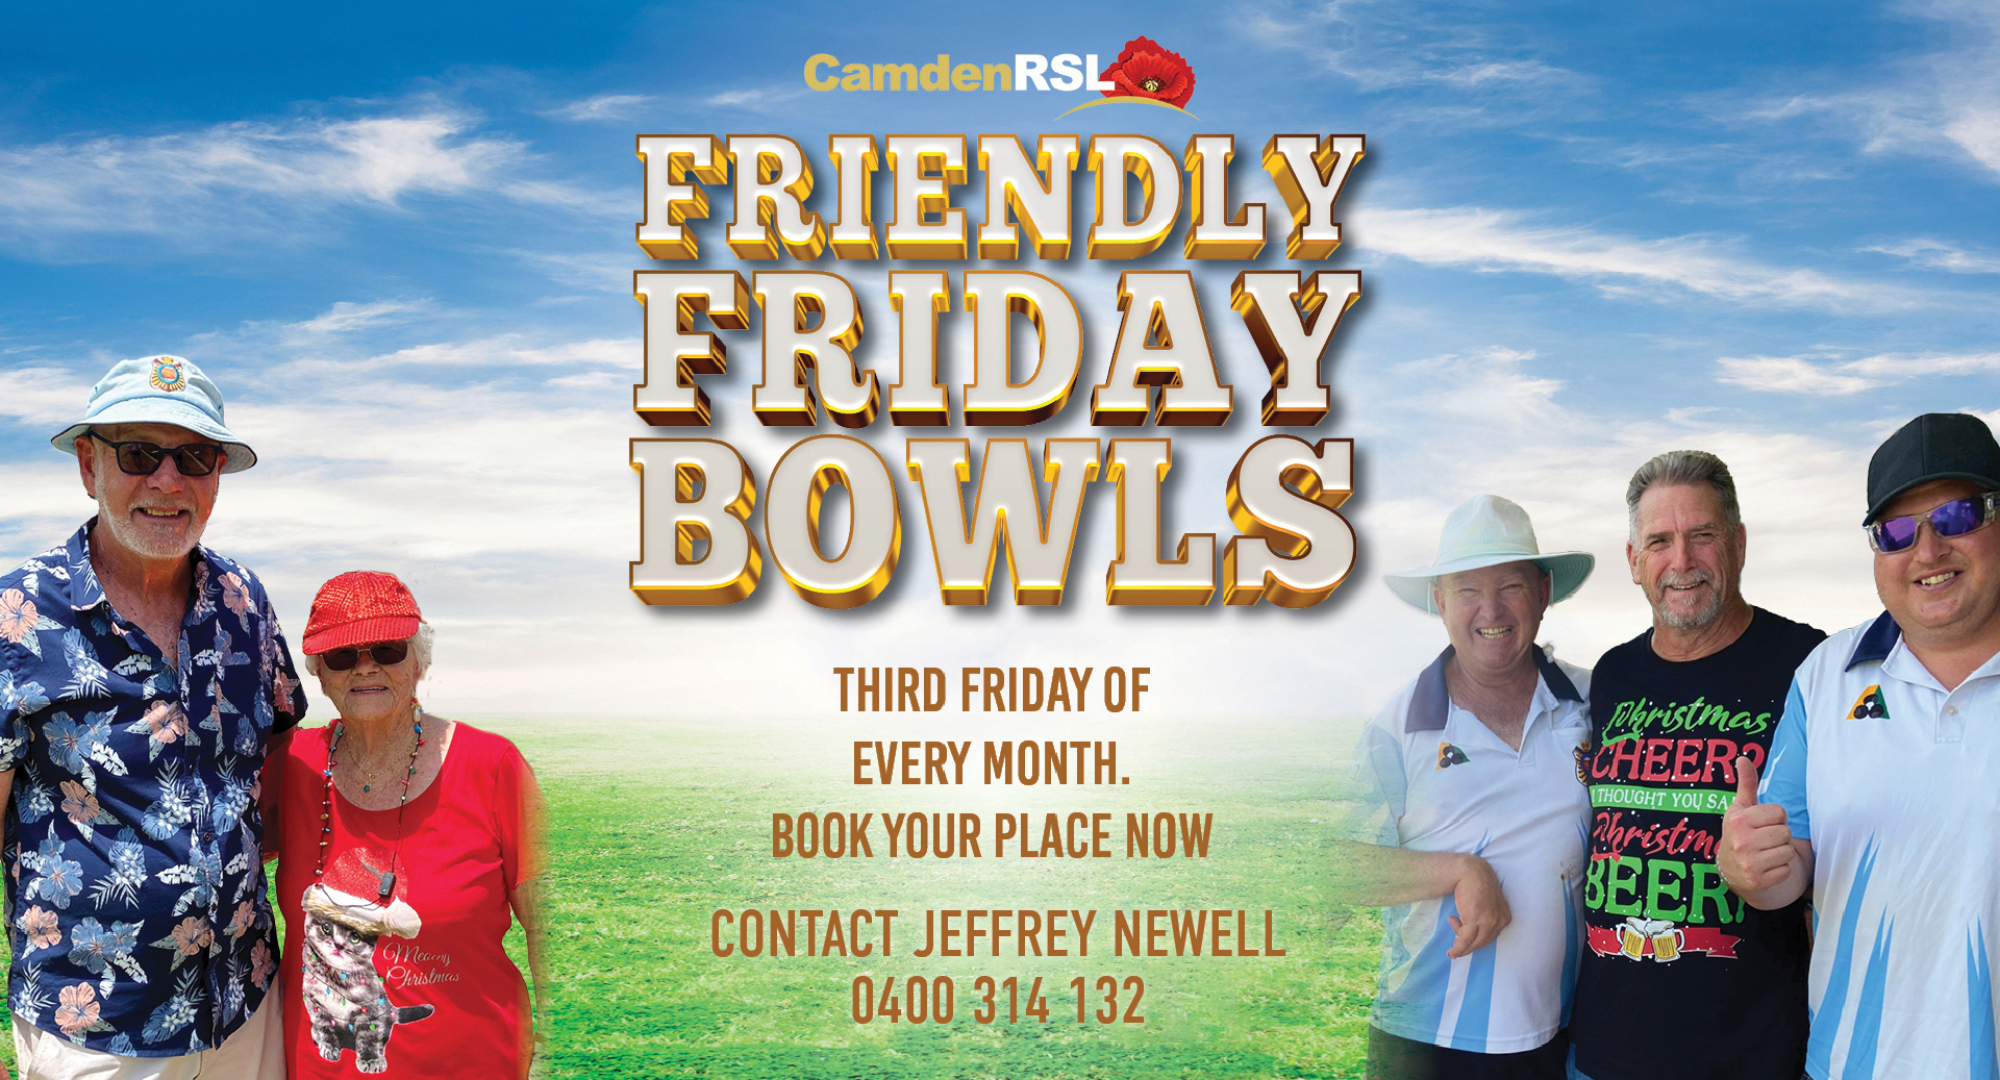 Friendly-Fridays-Flyer-Camden-RSL-V2